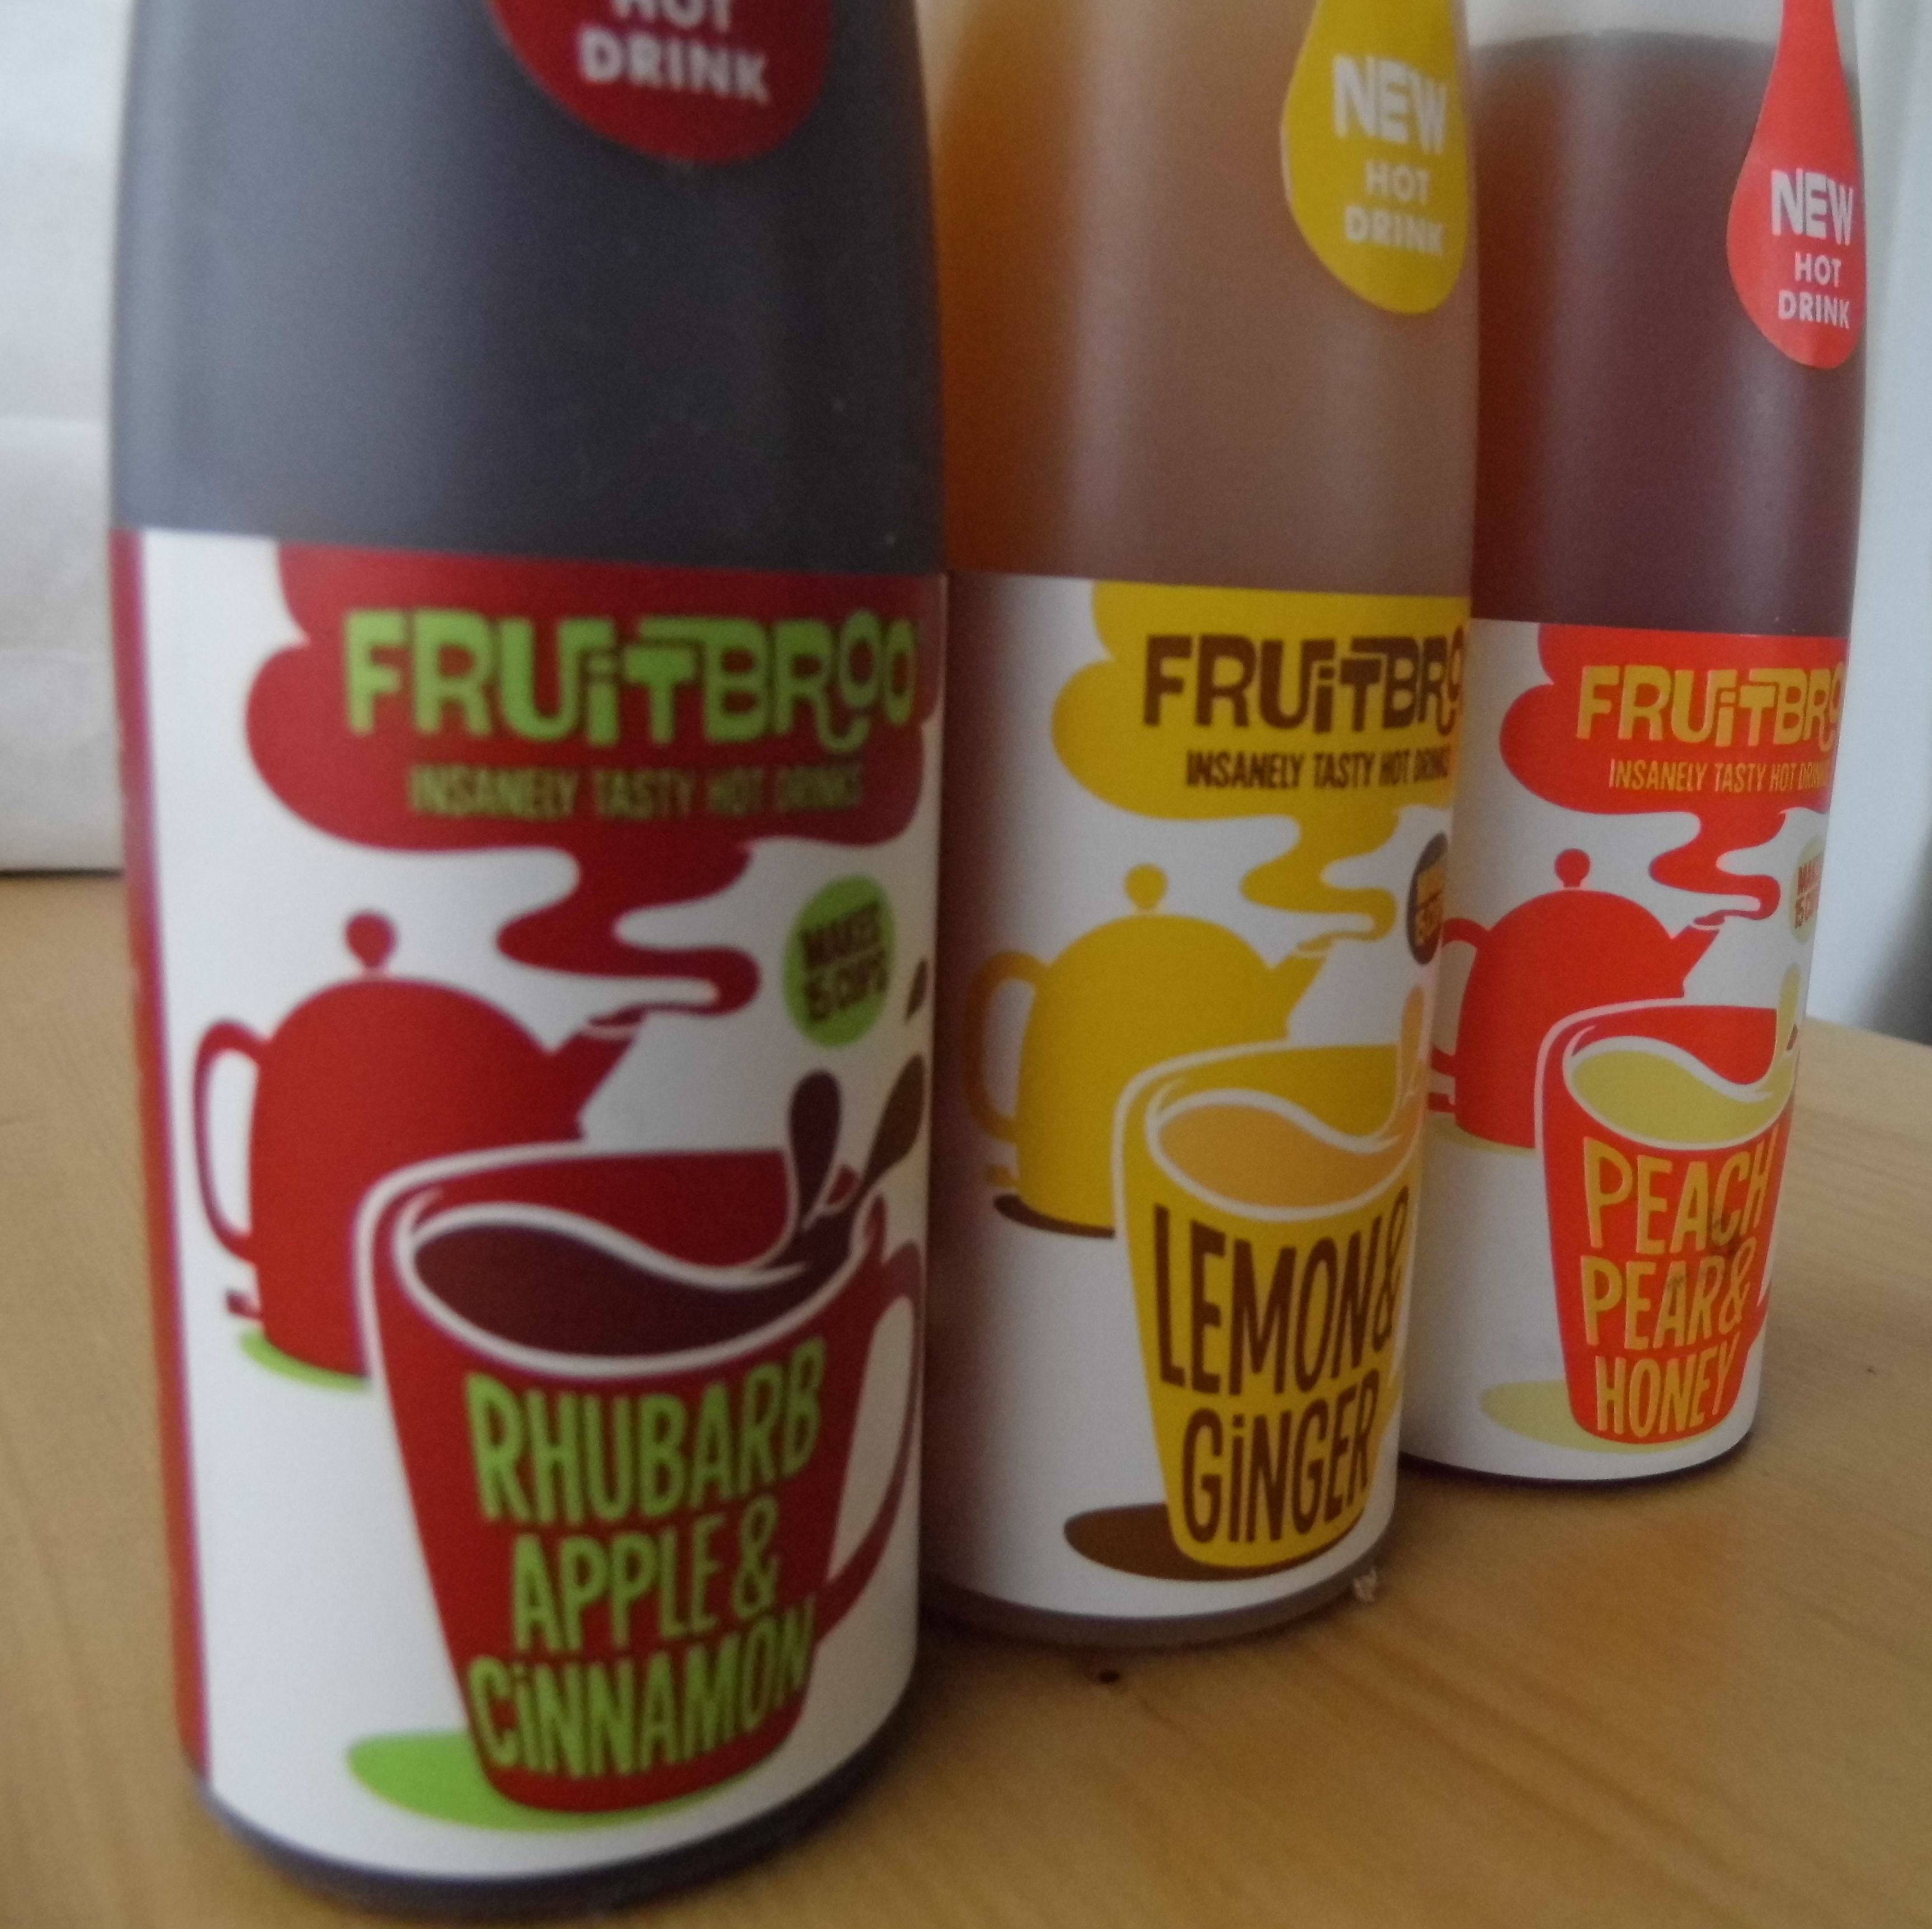 Fruitbroo Bottles